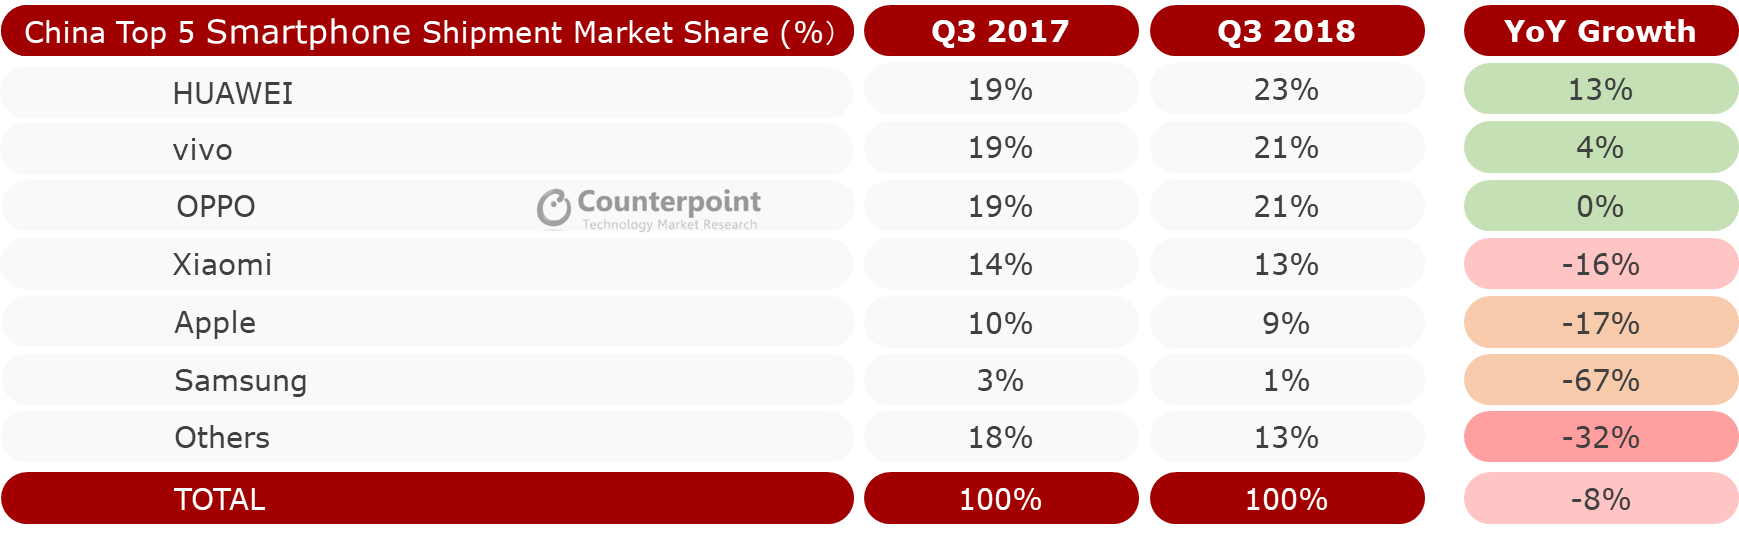 Chinese Smartphone Market Share Q3 2018